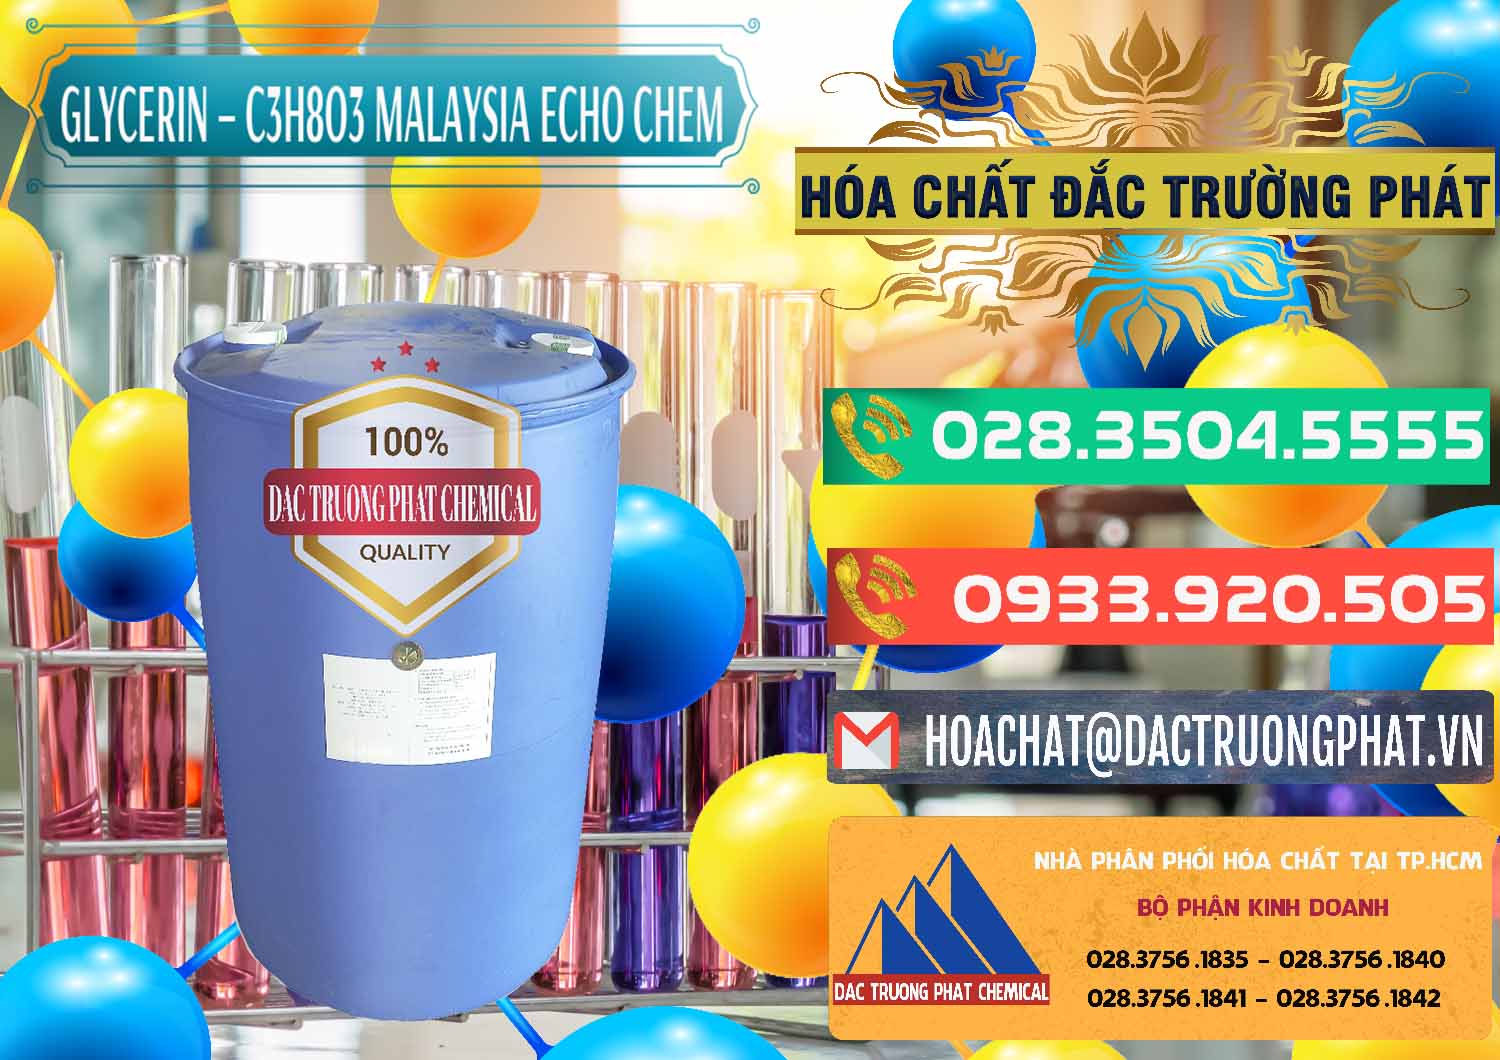 Nơi chuyên cung ứng và bán Glycerin – C3H8O3 99.7% Echo Chem Malaysia - 0273 - Cty chuyên nhập khẩu - phân phối hóa chất tại TP.HCM - congtyhoachat.com.vn